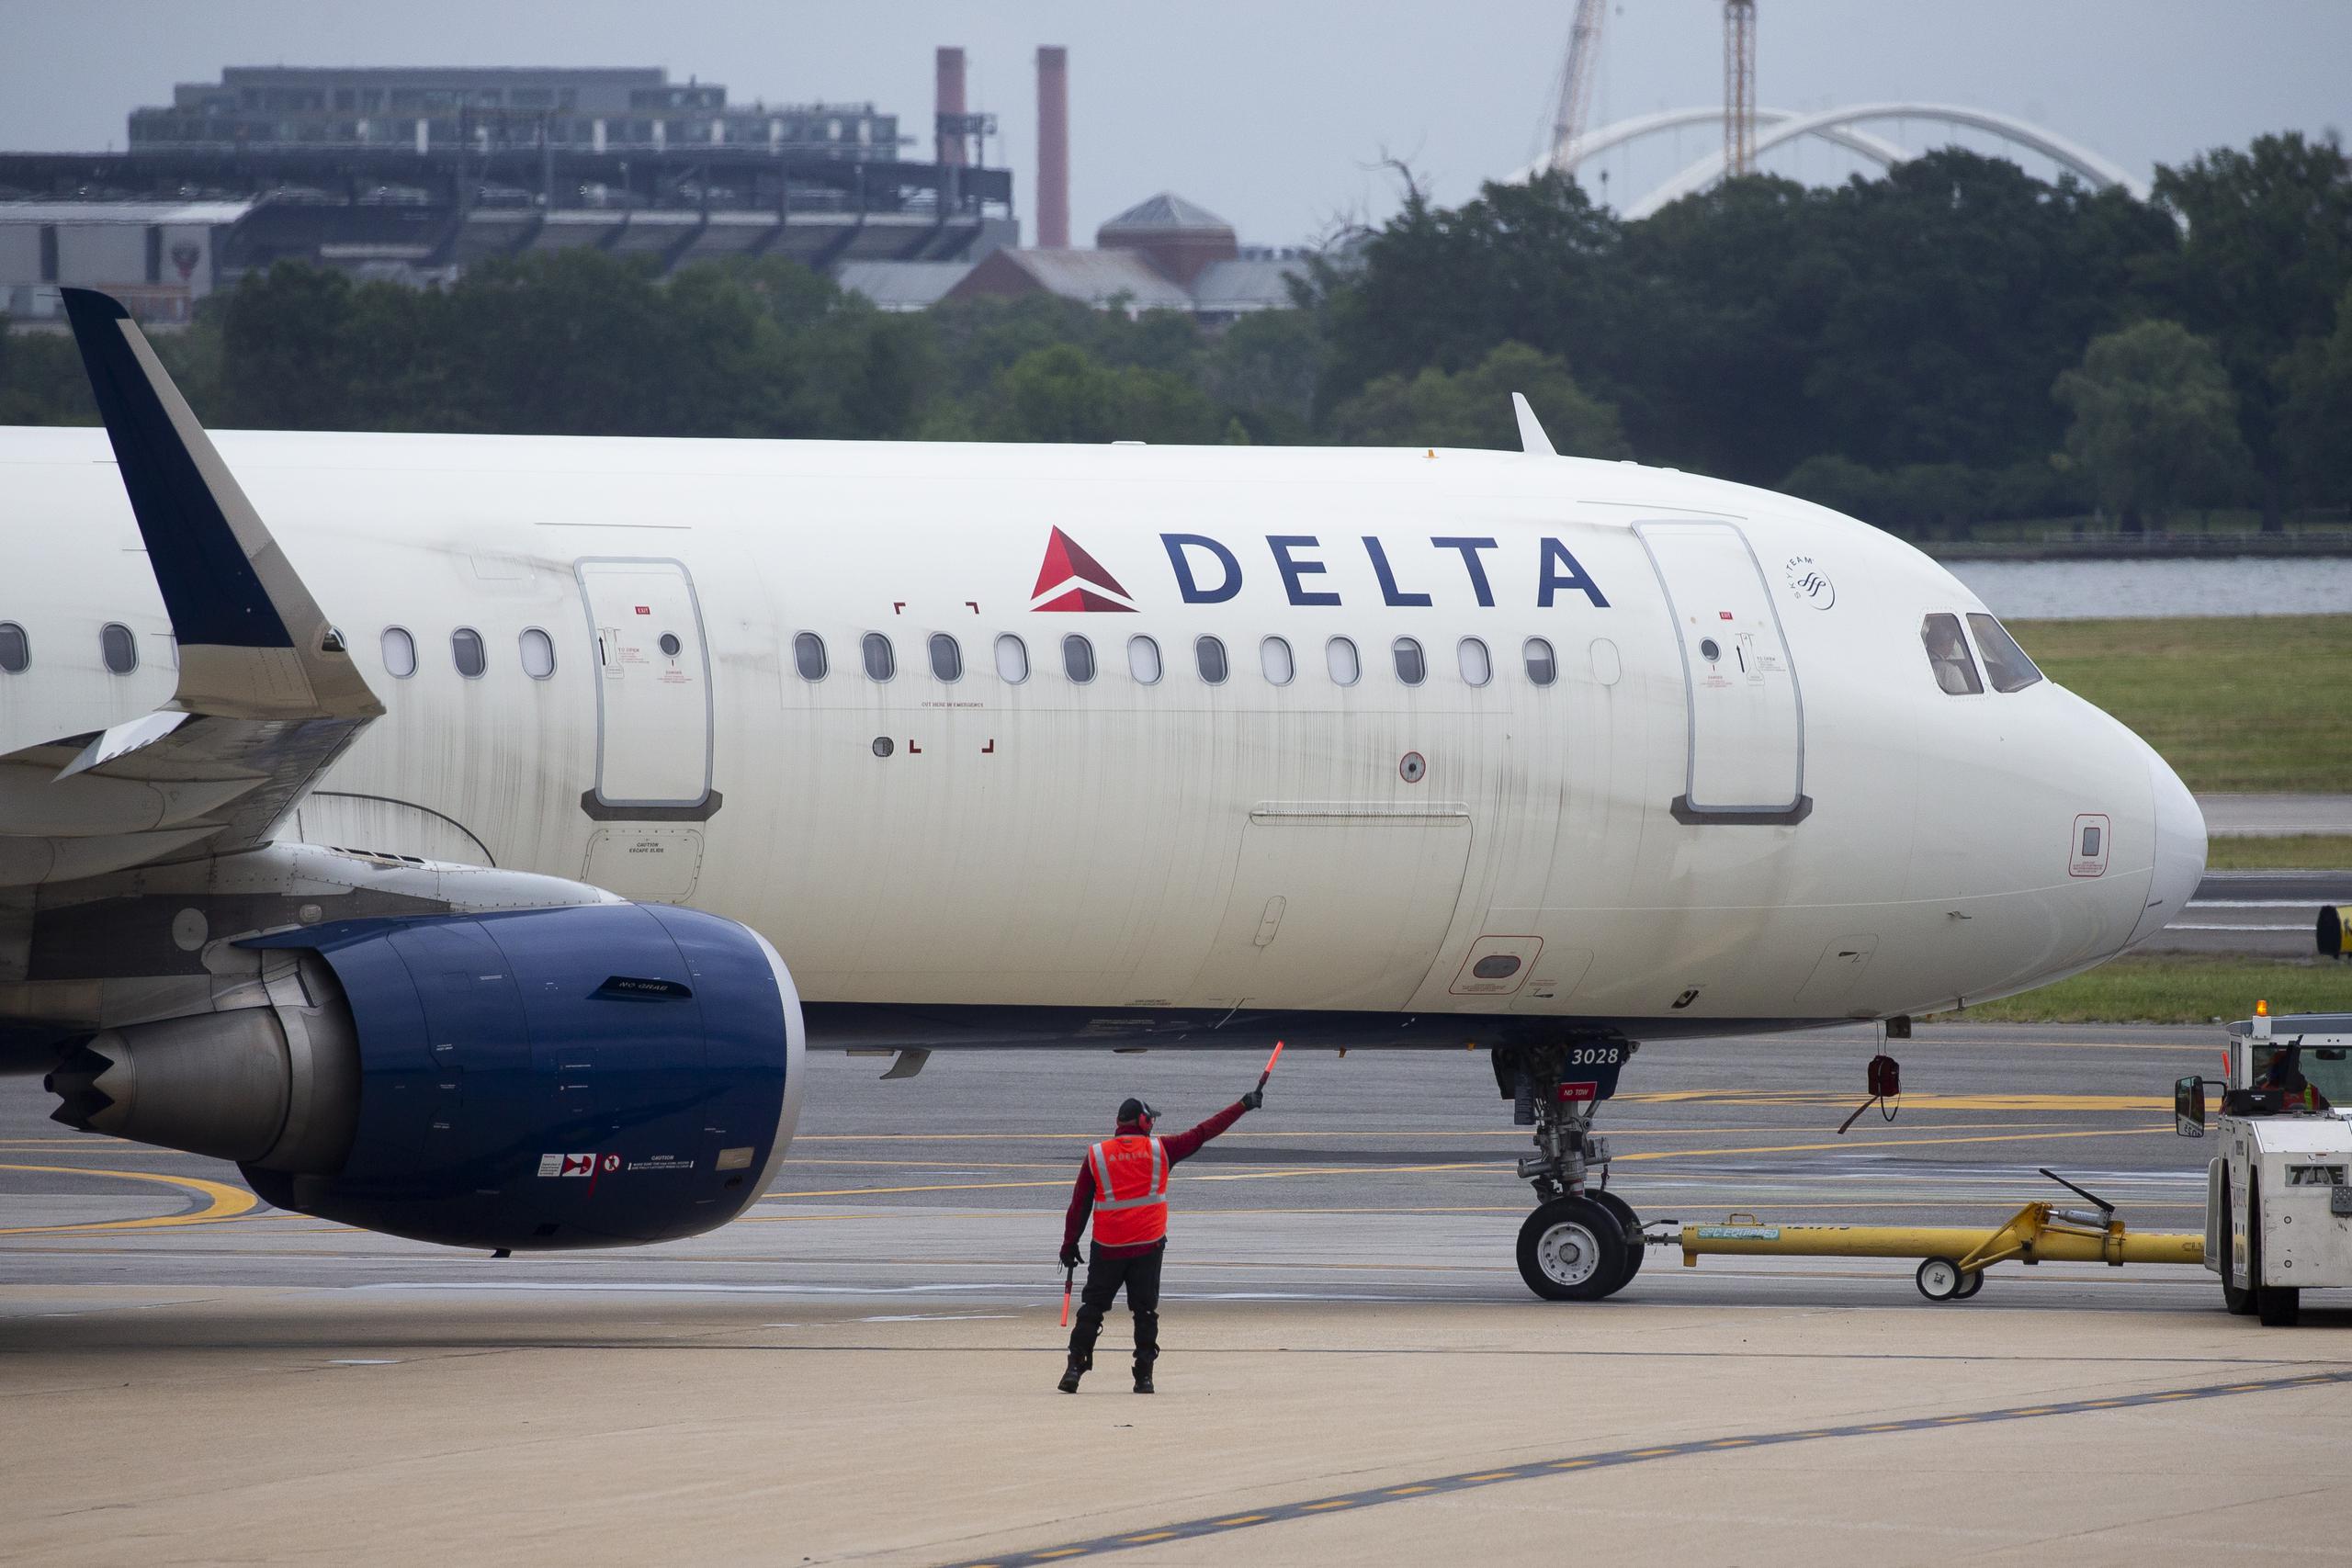 Delta Air Lines se disculpó por el incidente: "Pedimos disculpas a nuestros clientes por las molestias".